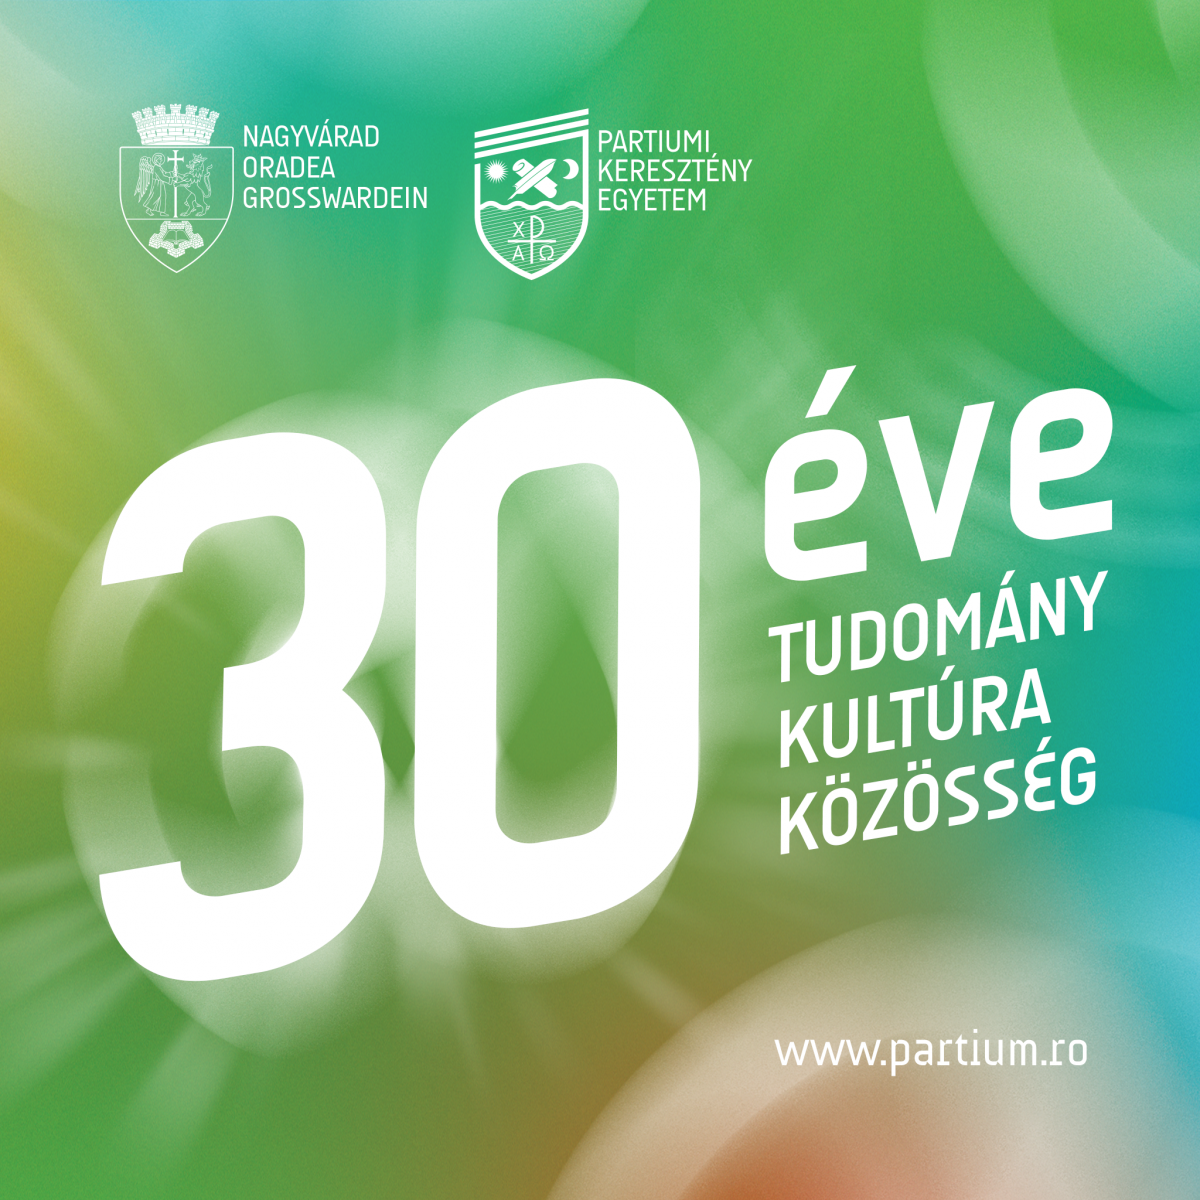 Online felvételi a PKE-n: több mint 770 helyet hirdettek Nagyváradon alapképzésre és mesterire